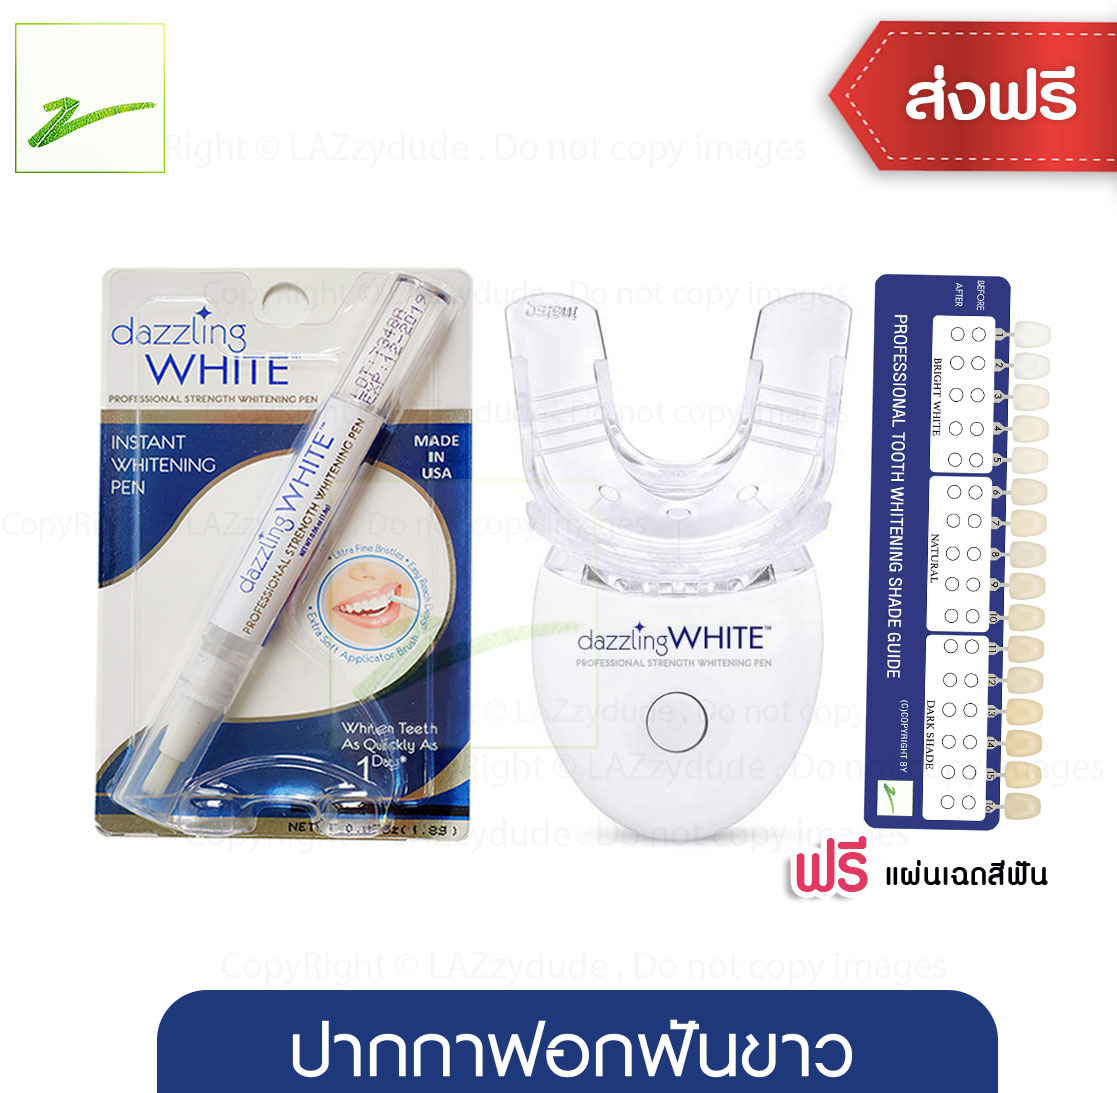 (ล๊อตใหม่ หมดอายุ 2022) เจล ฟอกฟันขาว ปากกาฟอกฟัน Dazzling White ของแท้ 100% จาก USA 1 แท่ง เจลฟอกฟันขาว+ไฟ LED 1 ชิ้น ฟันขาว สองเท่า